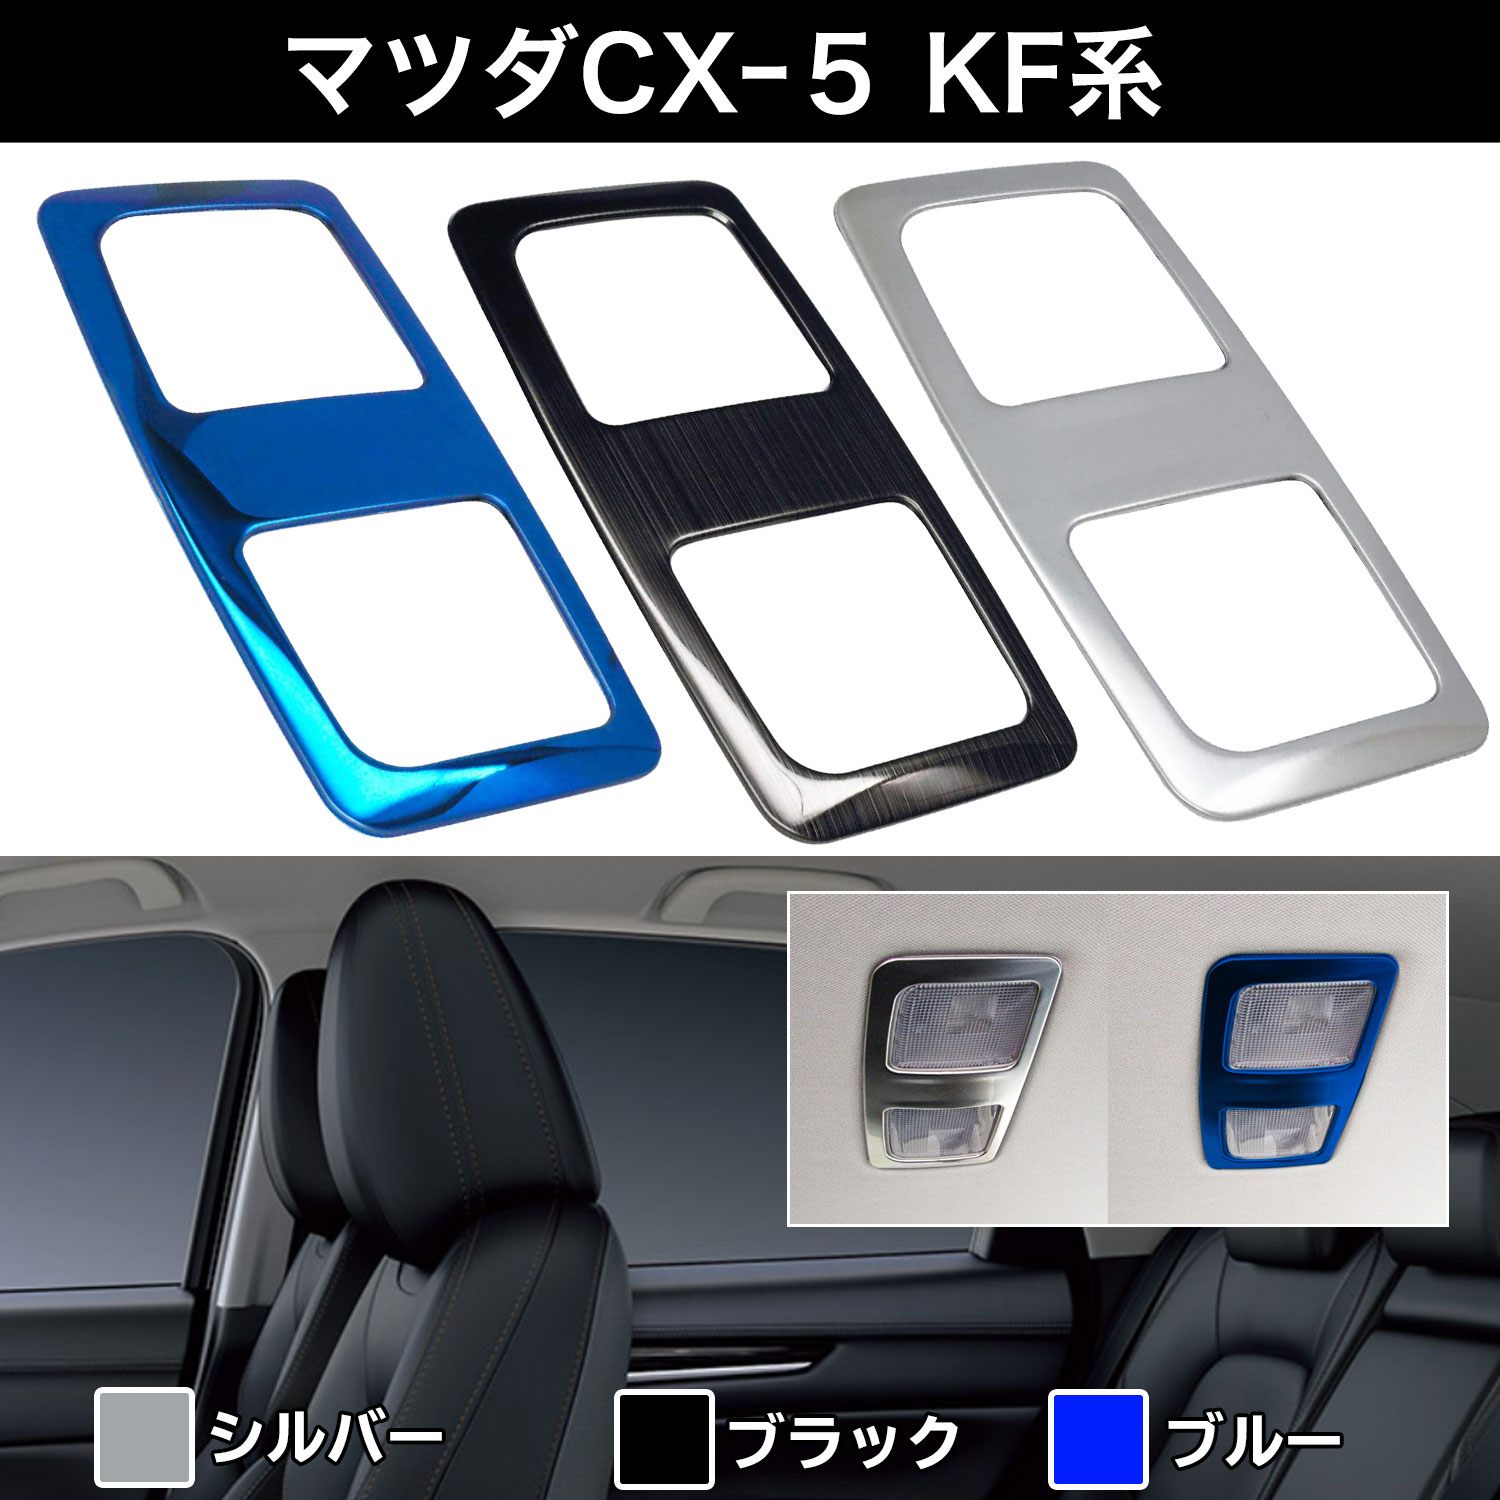 マツダ MAZDA CX-5 リヤ マップランプ カバー Negesu(ネグエス) 【ランキング受賞】【送料無料】